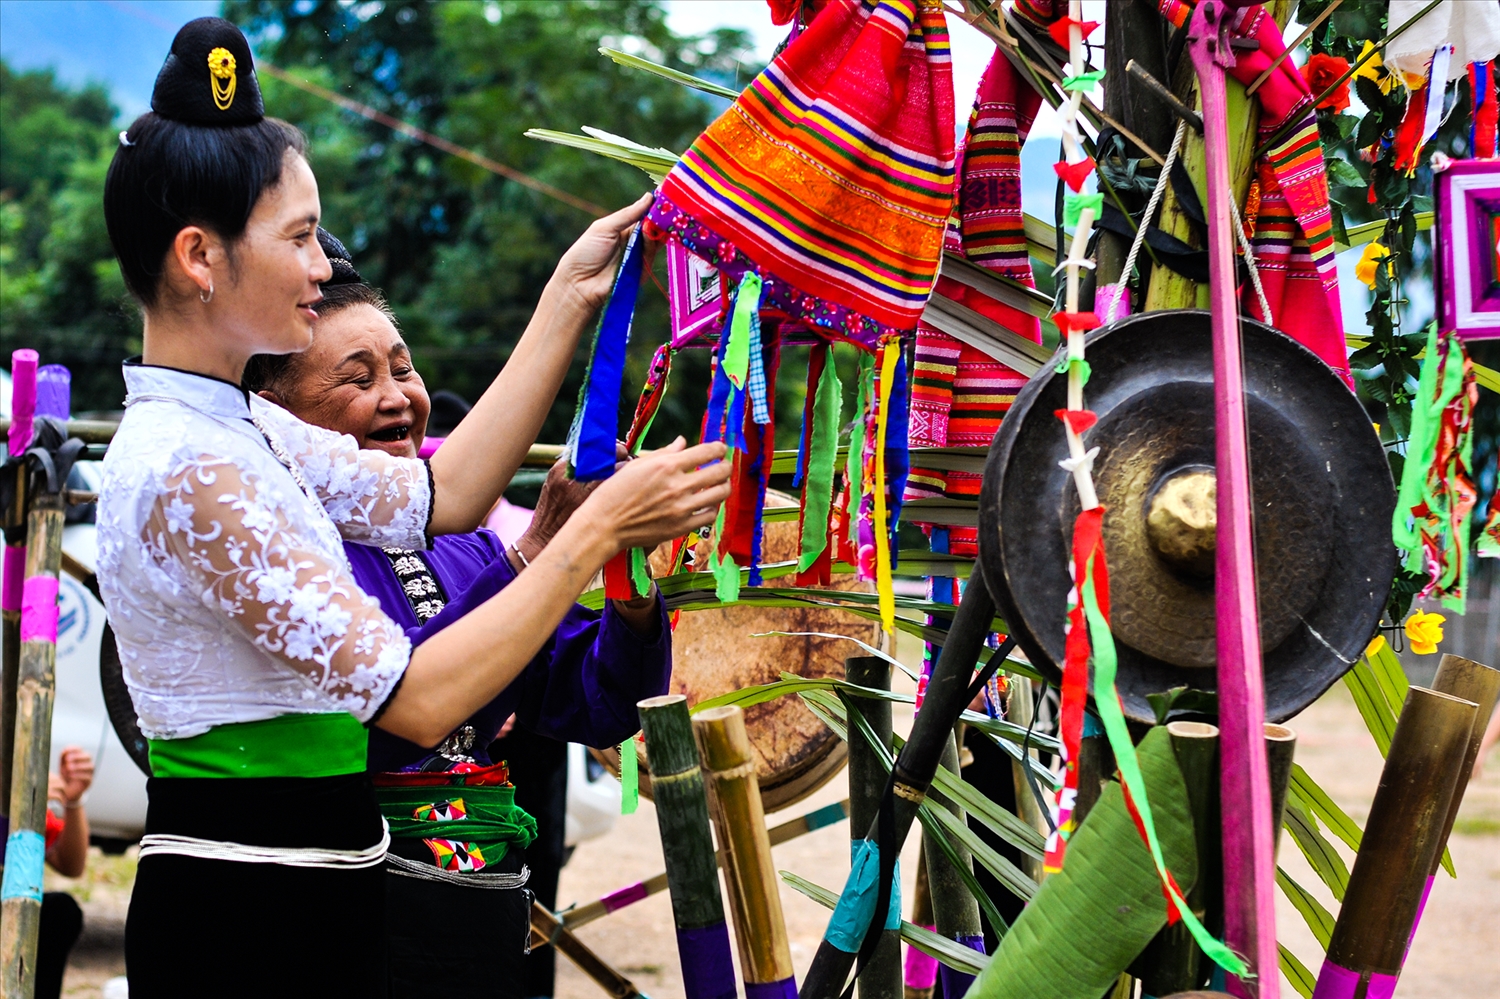 Trang phục váy áo, khăn truyền thống của phụ nữ Thái được chị em trưng diện trong các ngày lễ Tết, ngày hội của bản, làng, như một nét đẹp văn hóa riêng của dân tộc mình, góp phần gìn giữ nét đặc sắc trong đời sống của cộng đồng 54 dân Việt Nam.